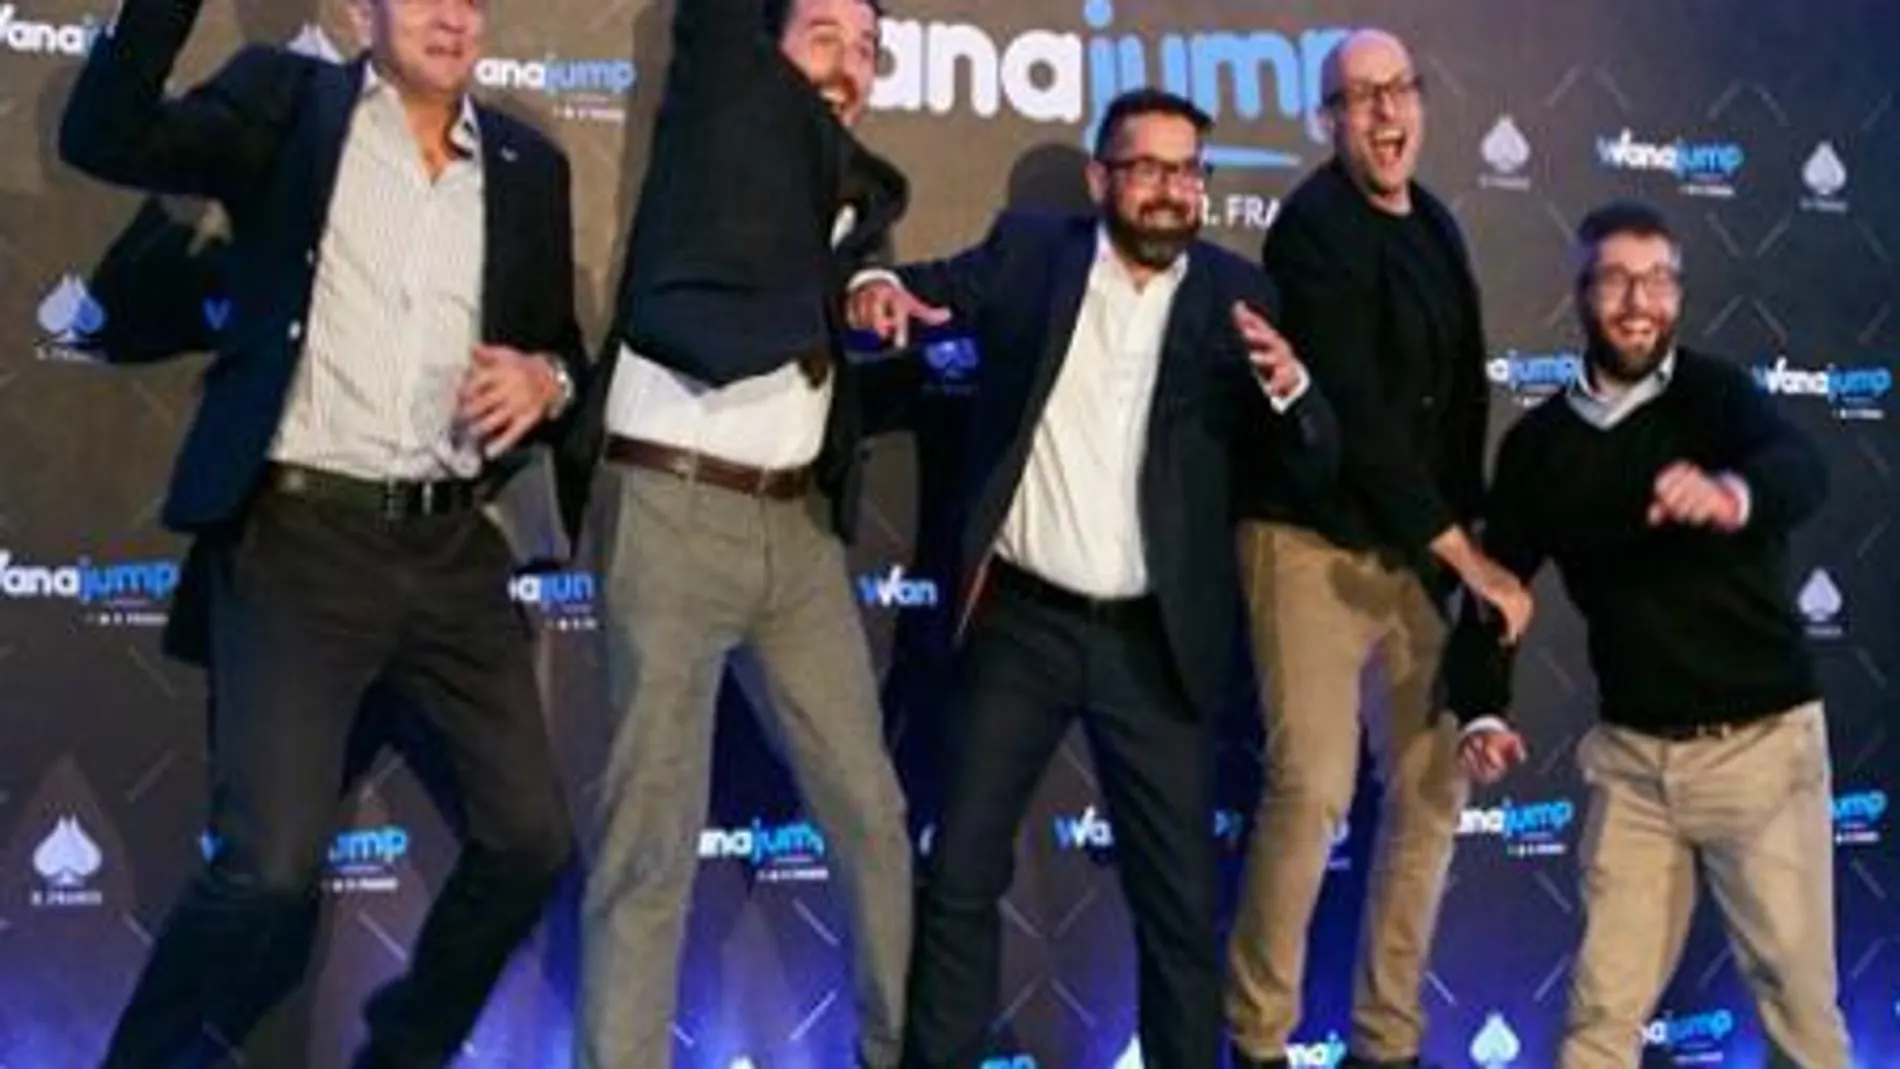 Recreativos Franco lanza Wanajump, la primera aceleradora de startups de juegos, apuestas y videojuegos